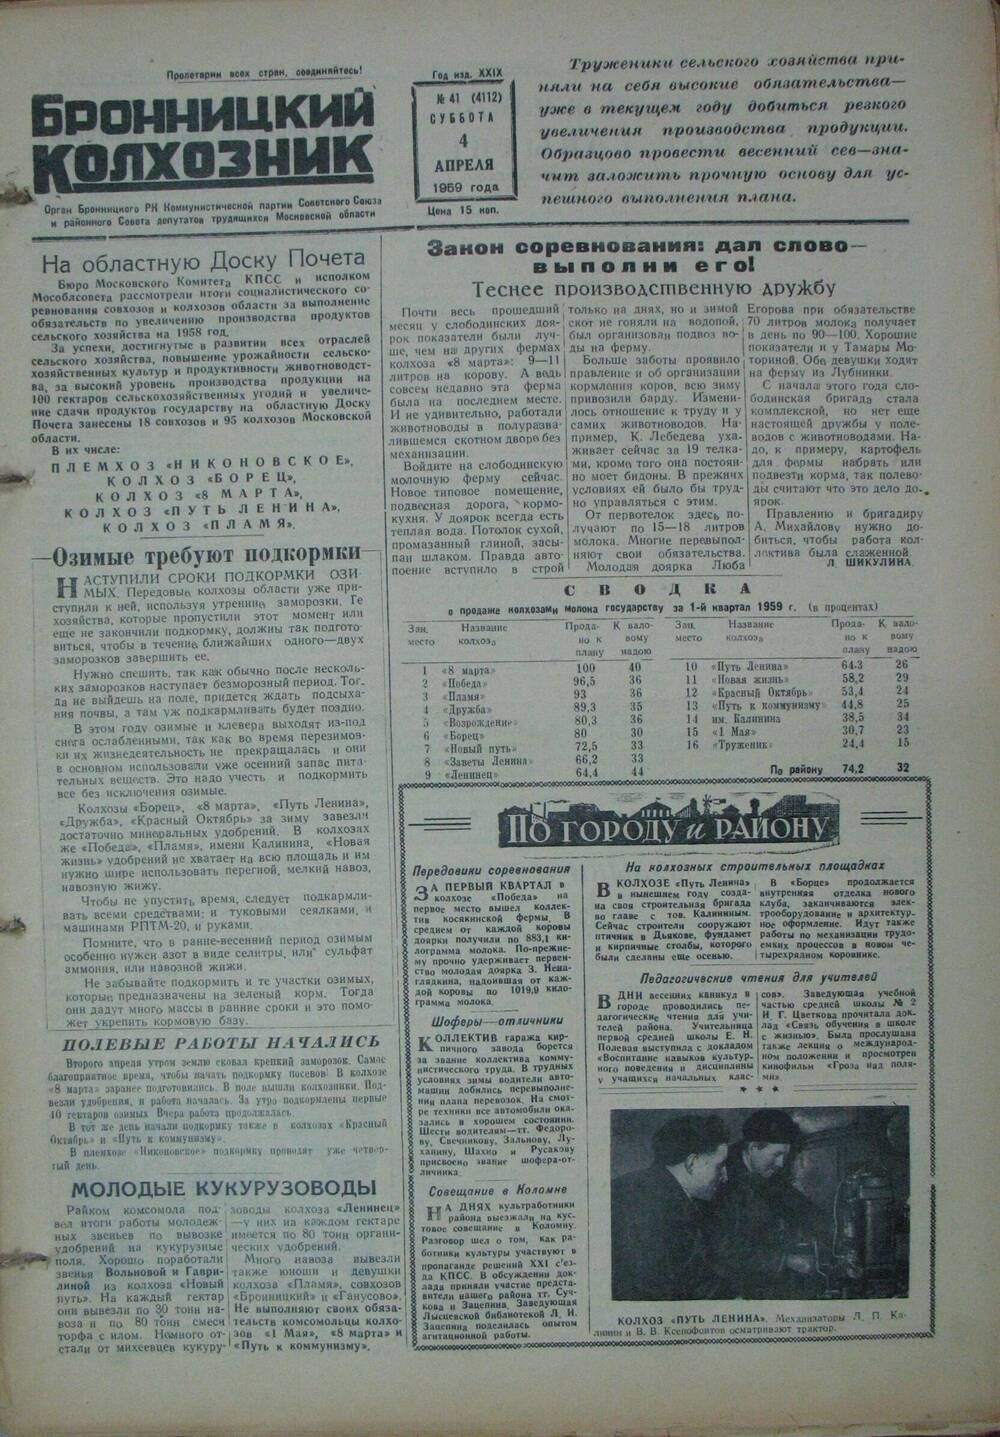 Бронницкий колхозник,  газета № 41 от 4 апреля 1959г